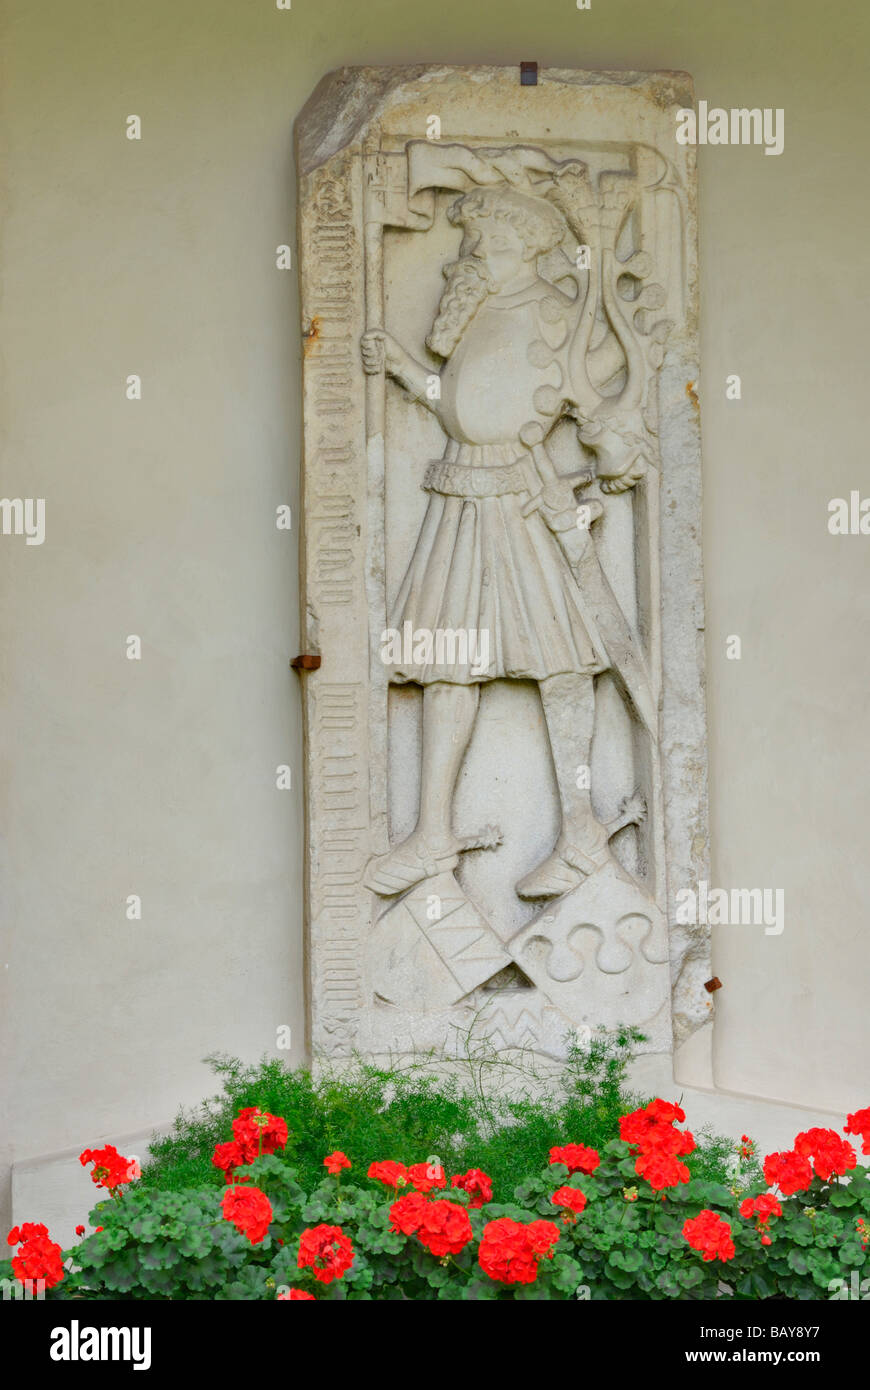 Dalle tombeau avec décoration florale, Oswald von Wolkenstein, poète, cathédrale de Brixen, Brixen, vallée de l'Autriche, le Tyrol du Sud, Itali Banque D'Images